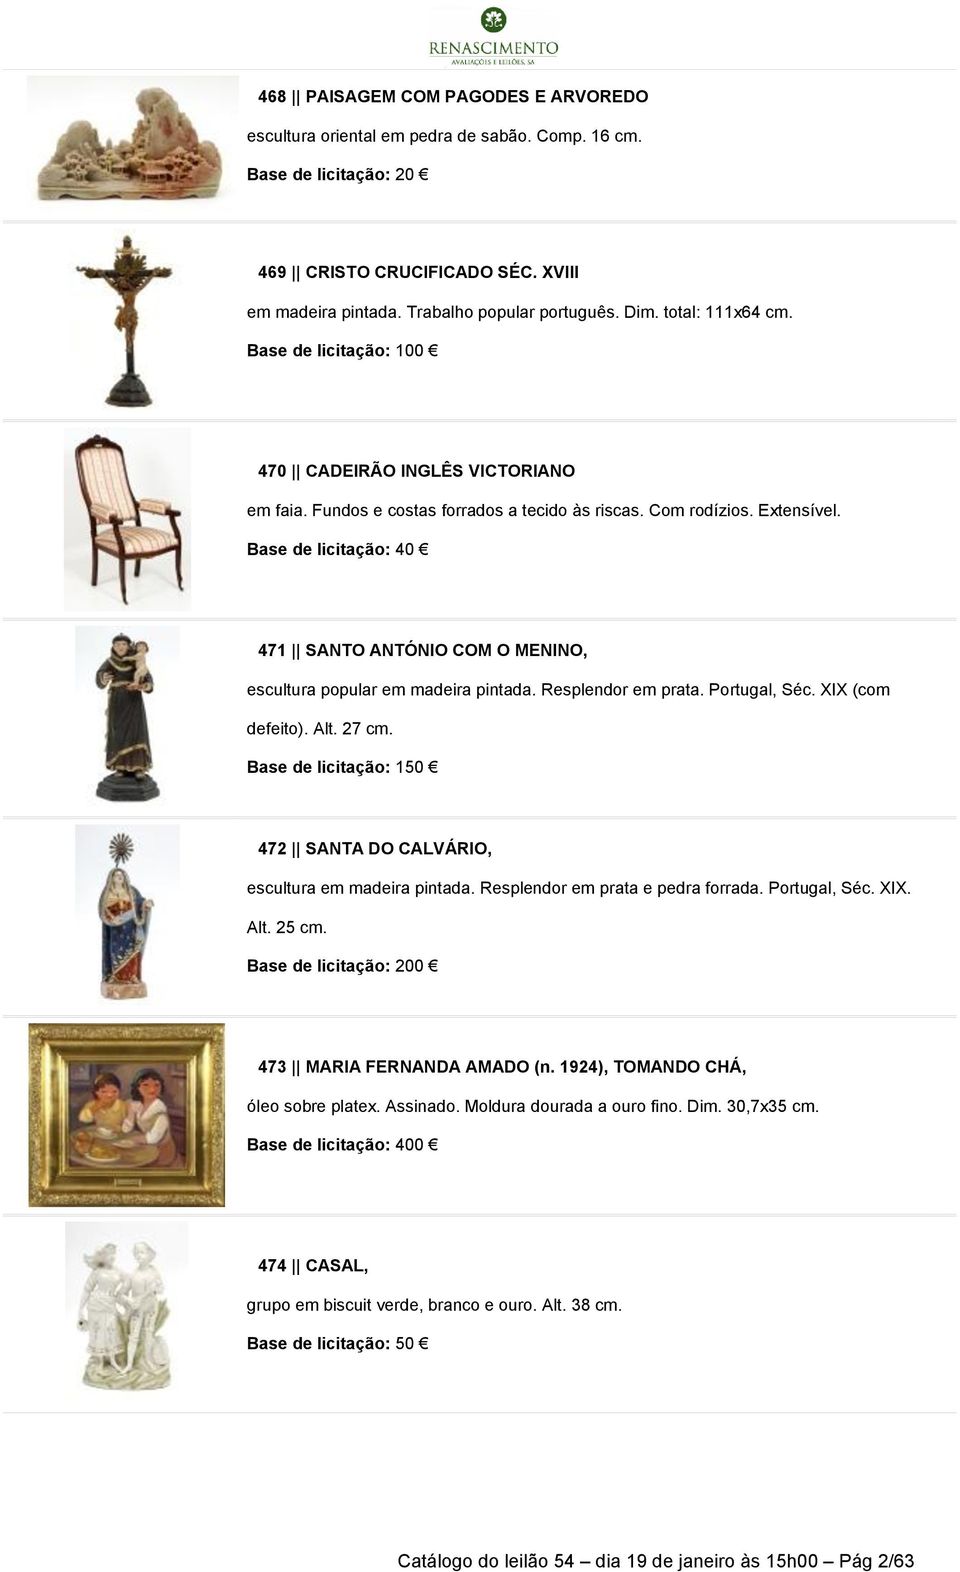 Base de licitação: 40 471 SANTO ANTÓNIO COM O MENINO, escultura popular em madeira pintada. Resplendor em prata. Portugal, Séc. XIX (com defeito). Alt. 27 cm.